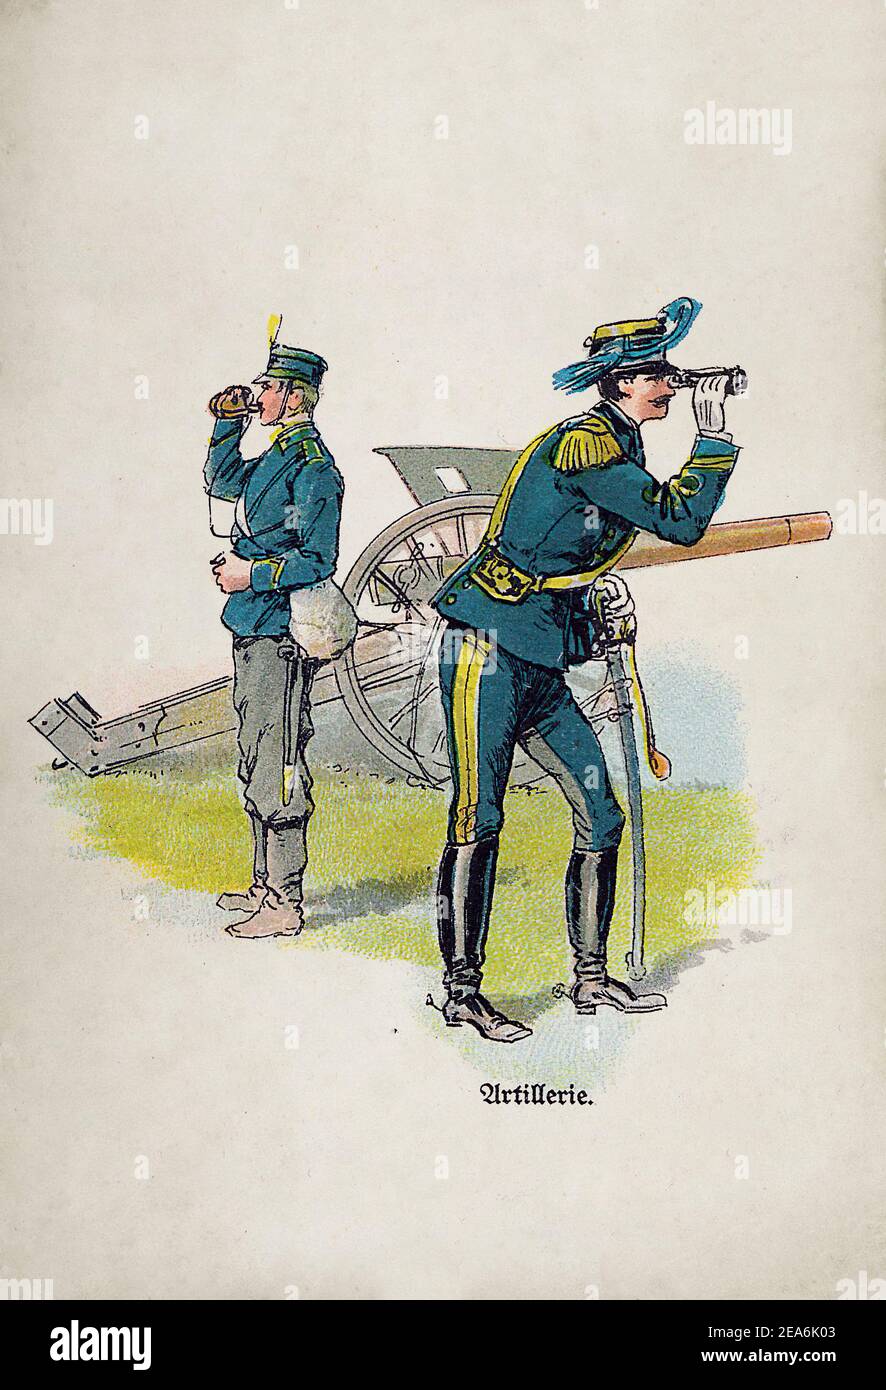 Königliche italienische Armee vor dem Ersten Weltkrieg Artillerie. 1910s Stockfoto